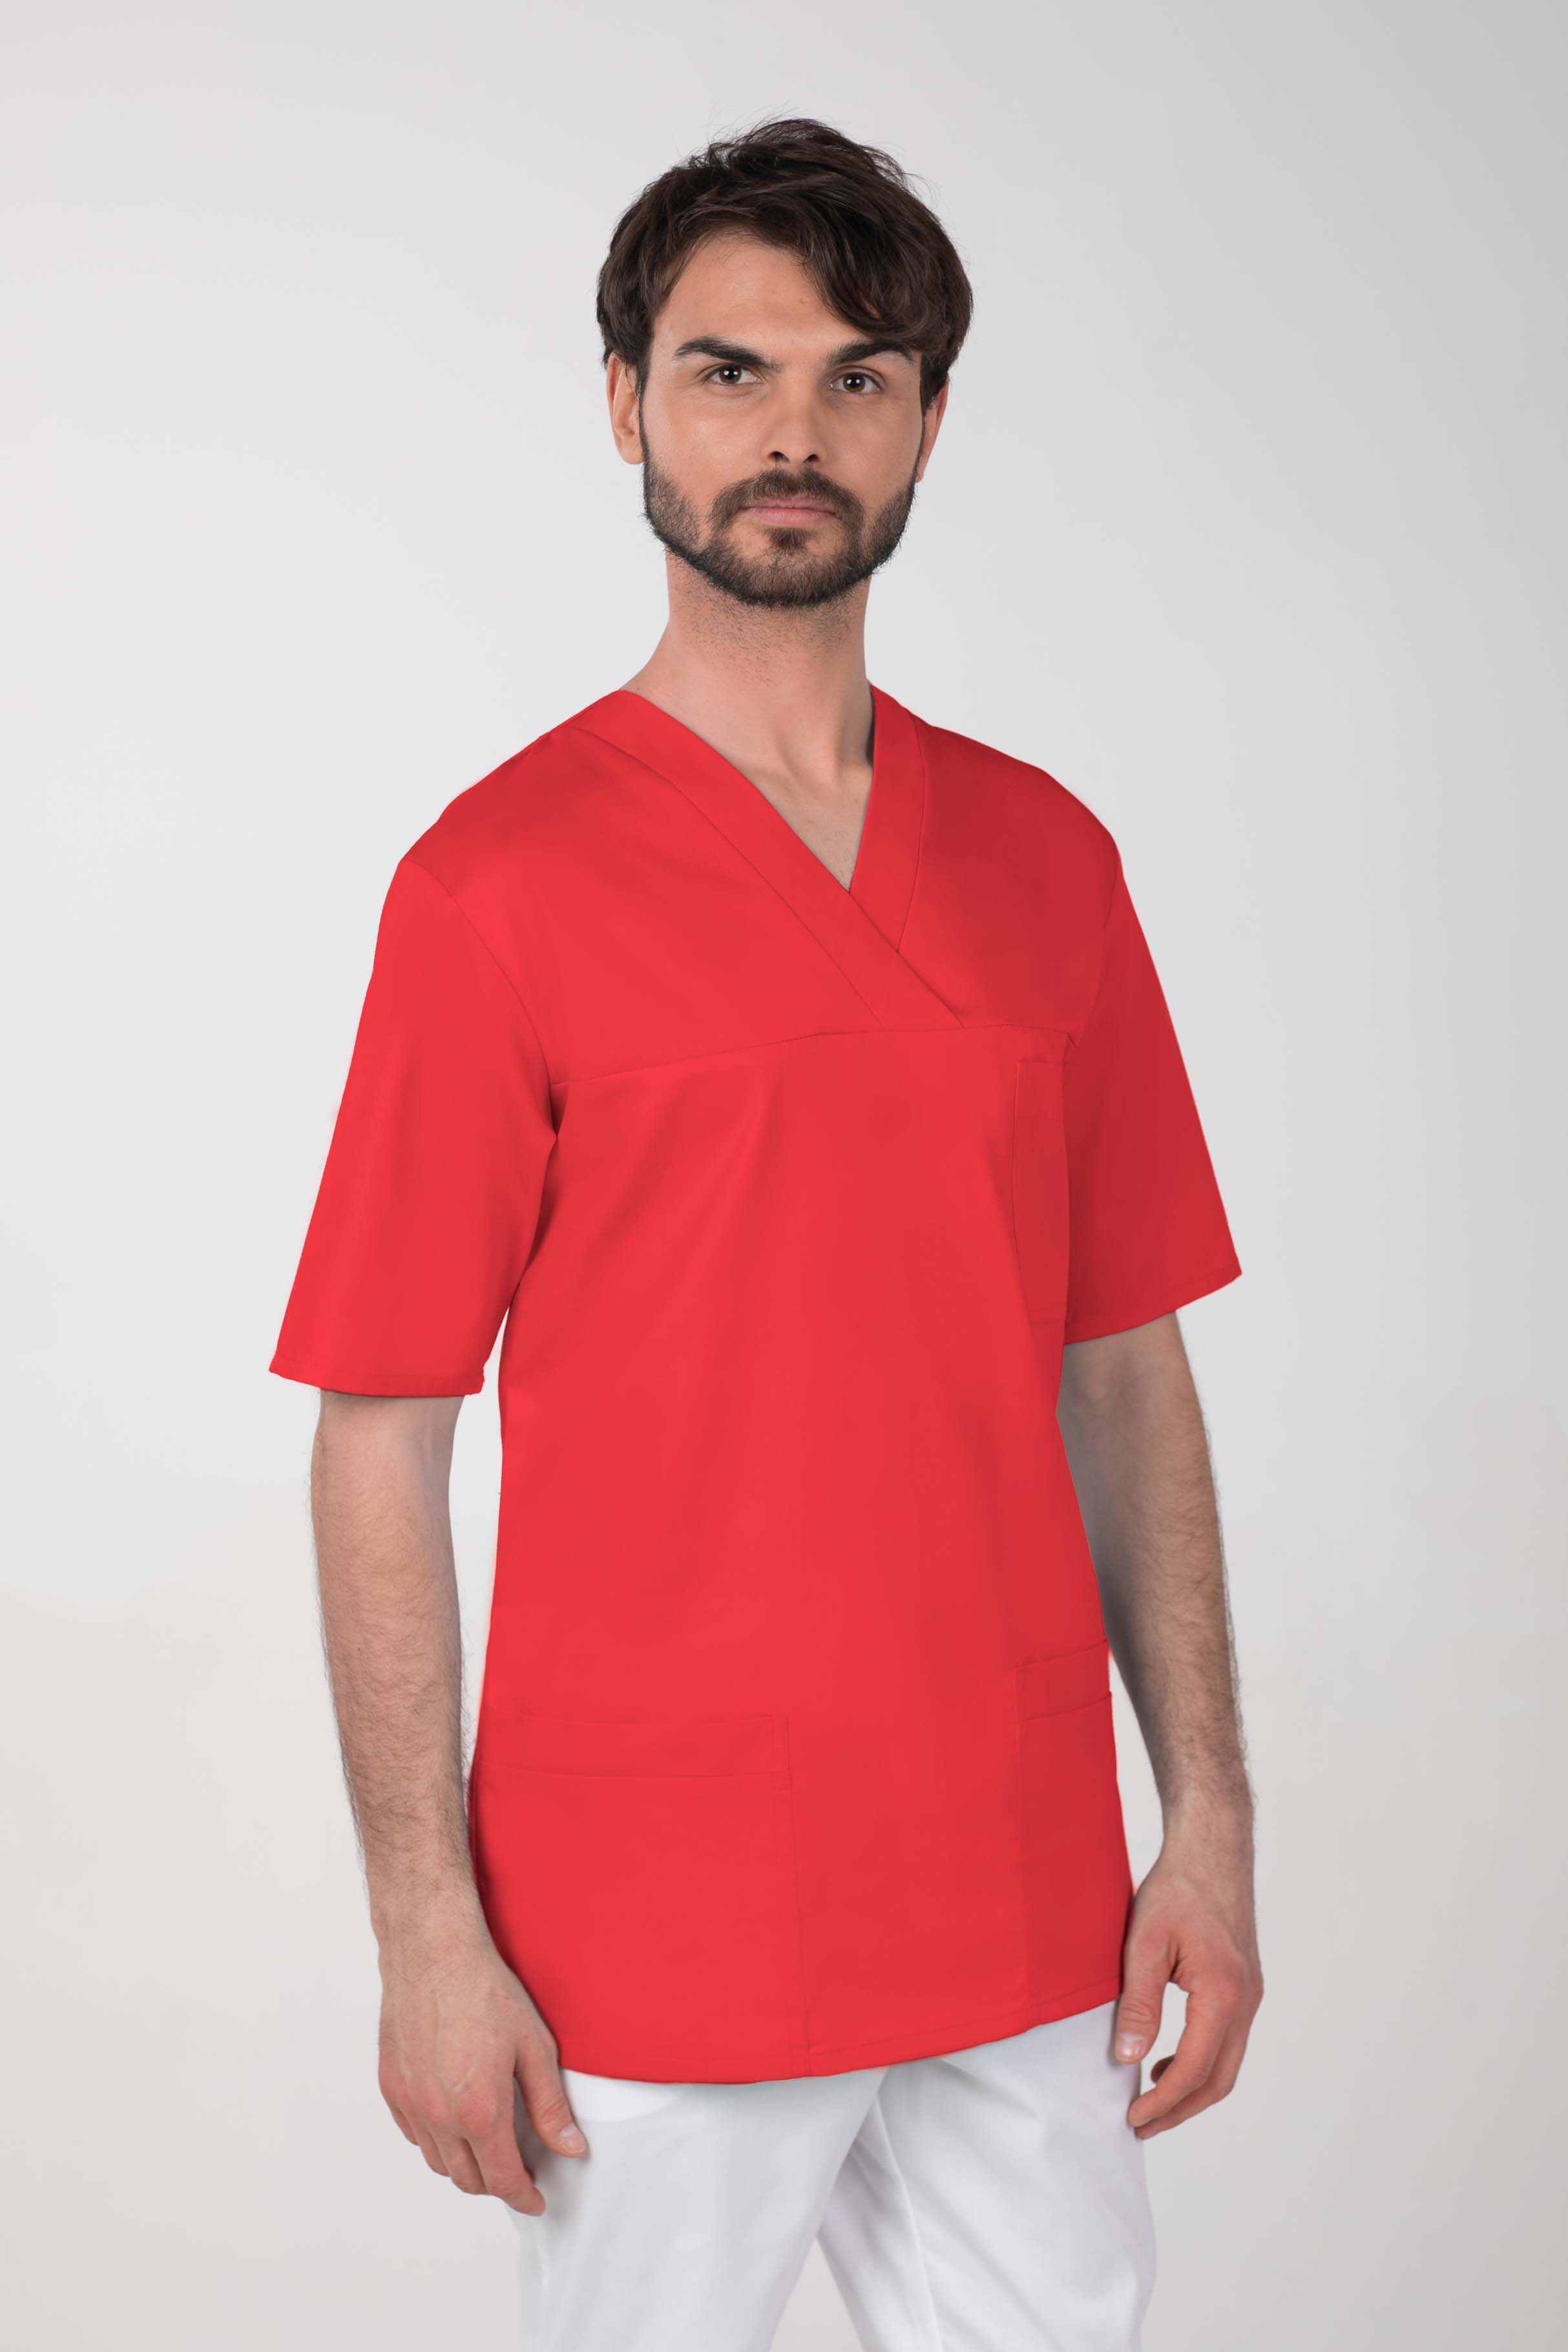 Pánská barevná zdravotnická košile M-074C, červená